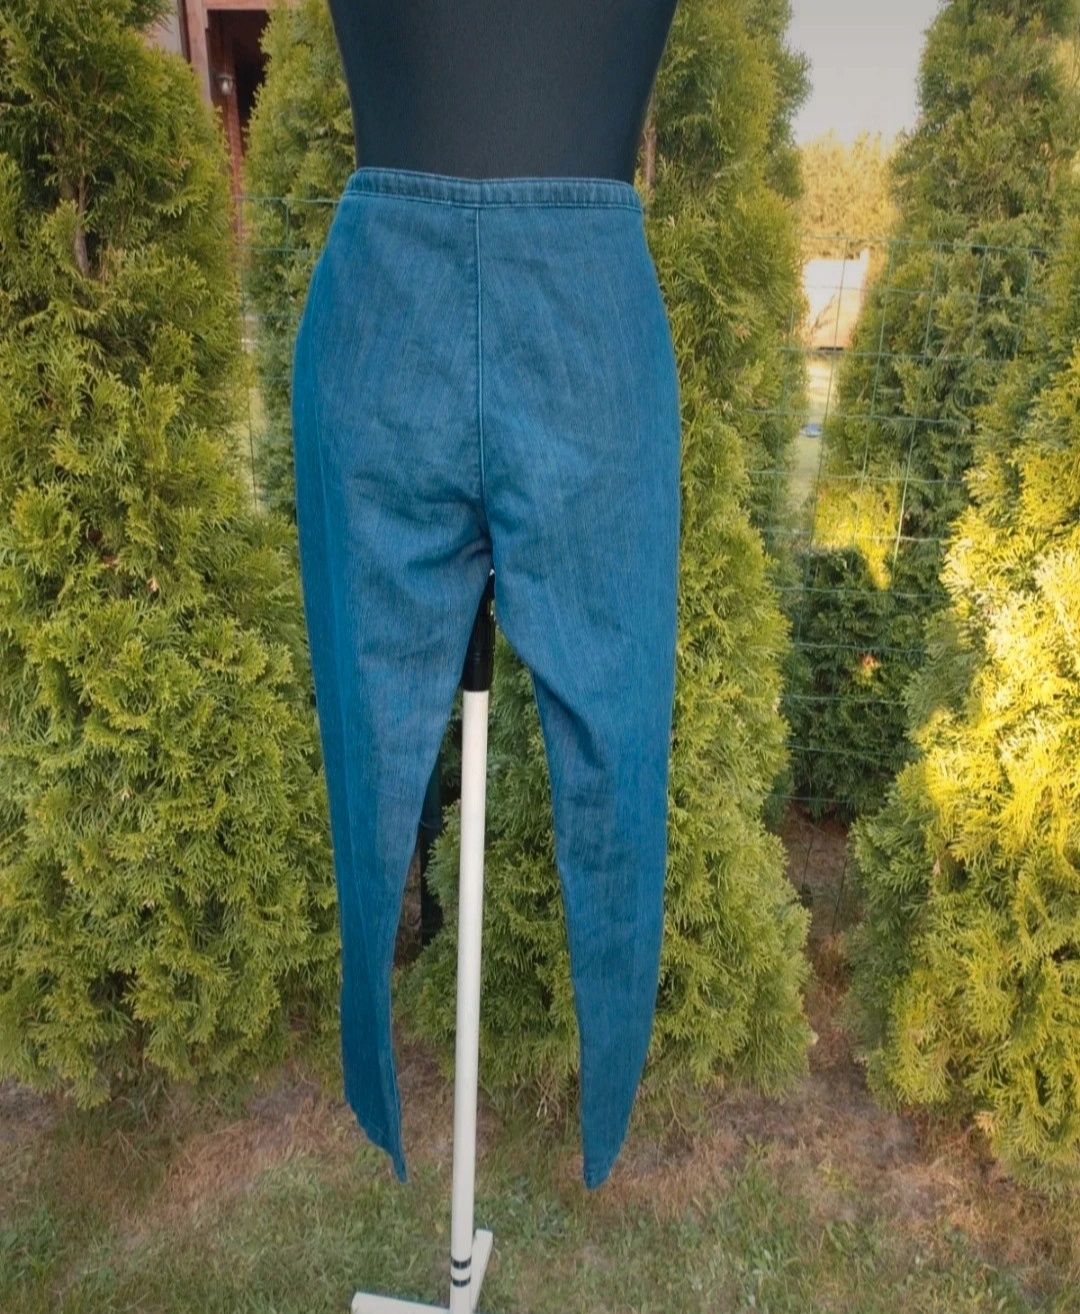 Spodnie jeans nietypowe